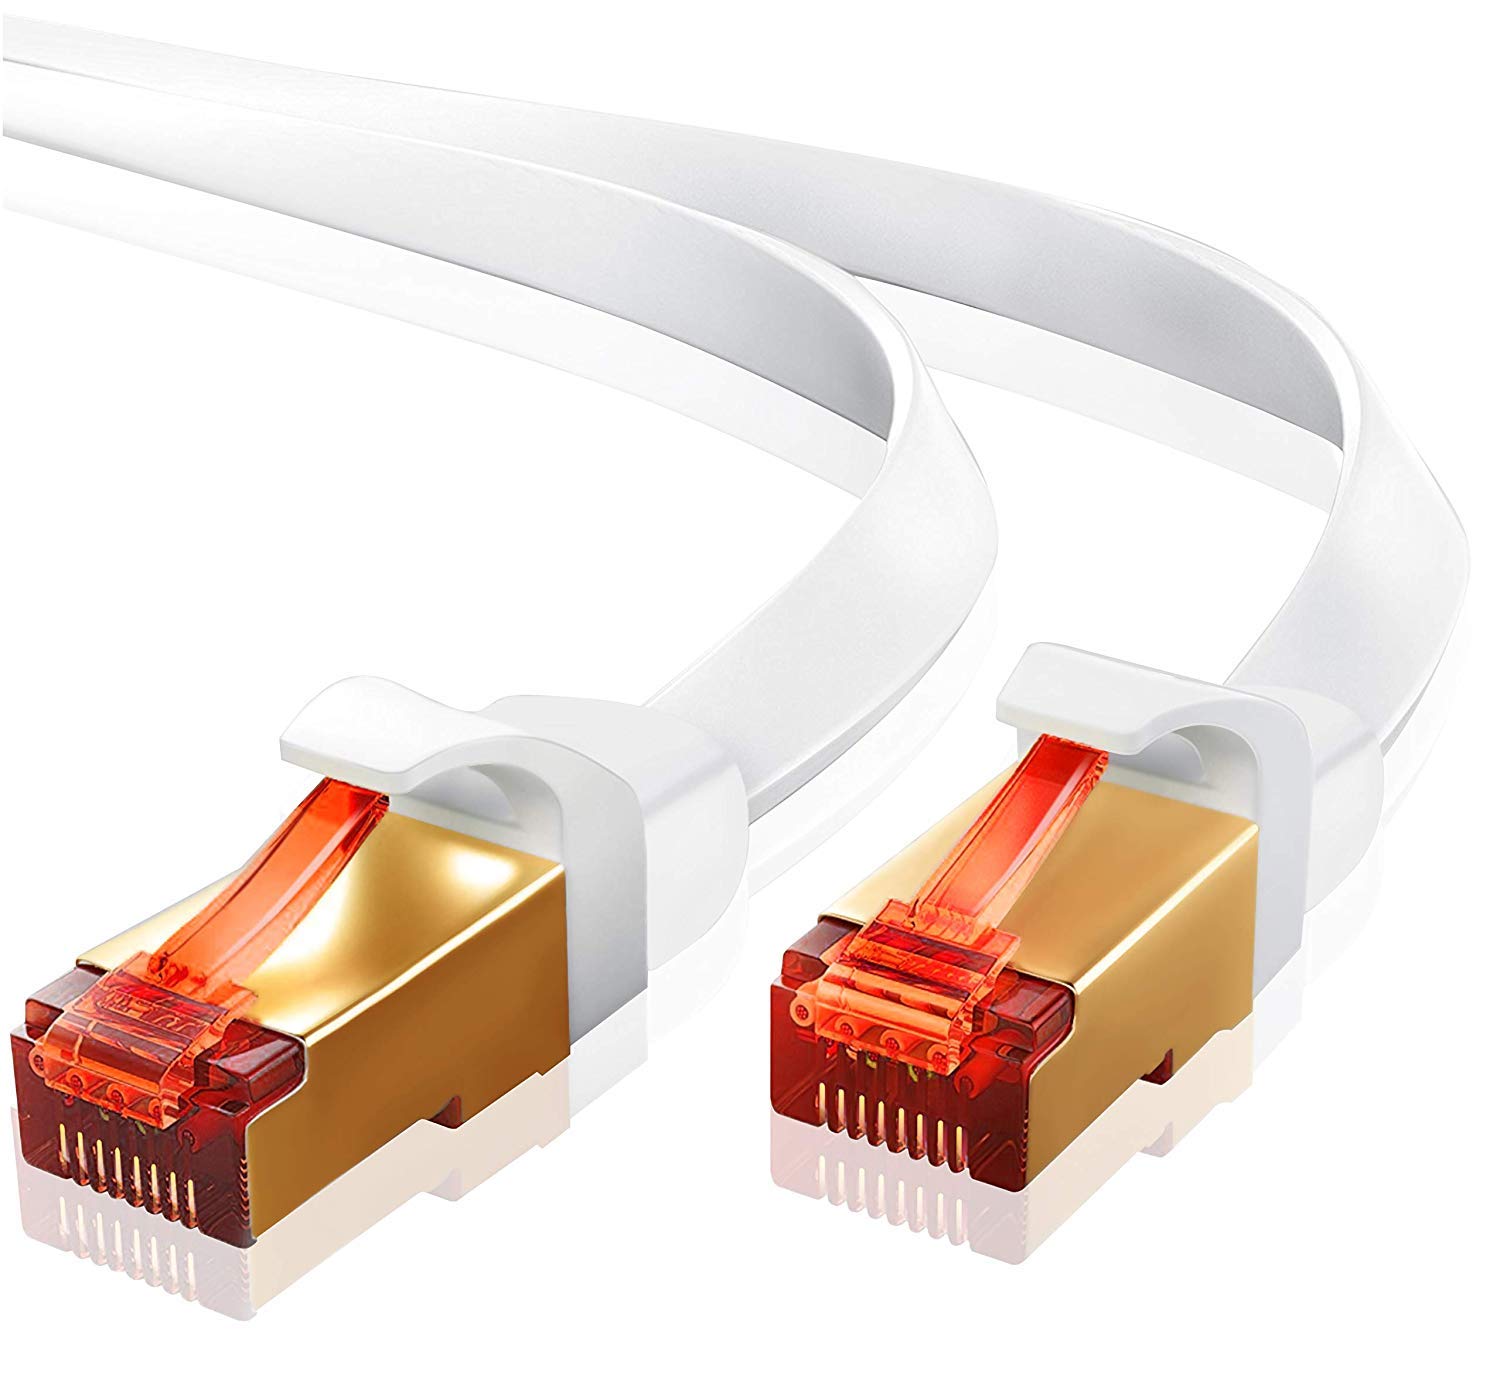 IBRA 15M Ethernet Kabel Cat7 Gigabit Lan Netzwerkkabel RJ45 10Gbps 600Mhz/s STP Molded Verlegekabel für Switch,Router,Modem,Patchpannel,Access Point,Patchfelder Flach Weiß